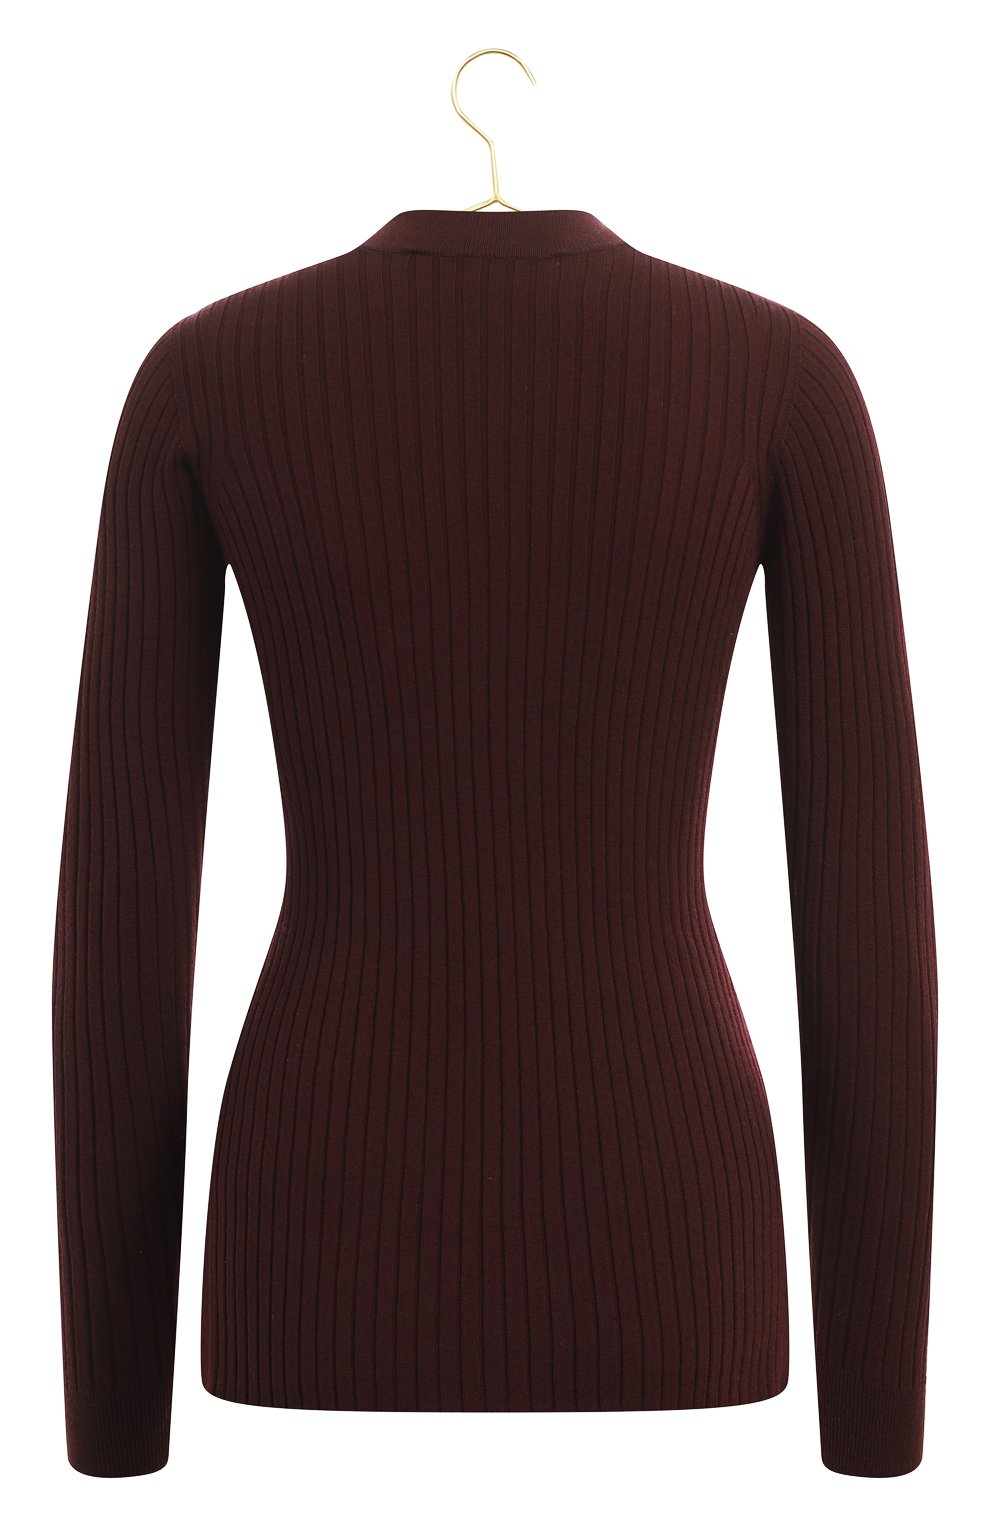 Шерстяной пуловер | Versace | Бордовый - 2